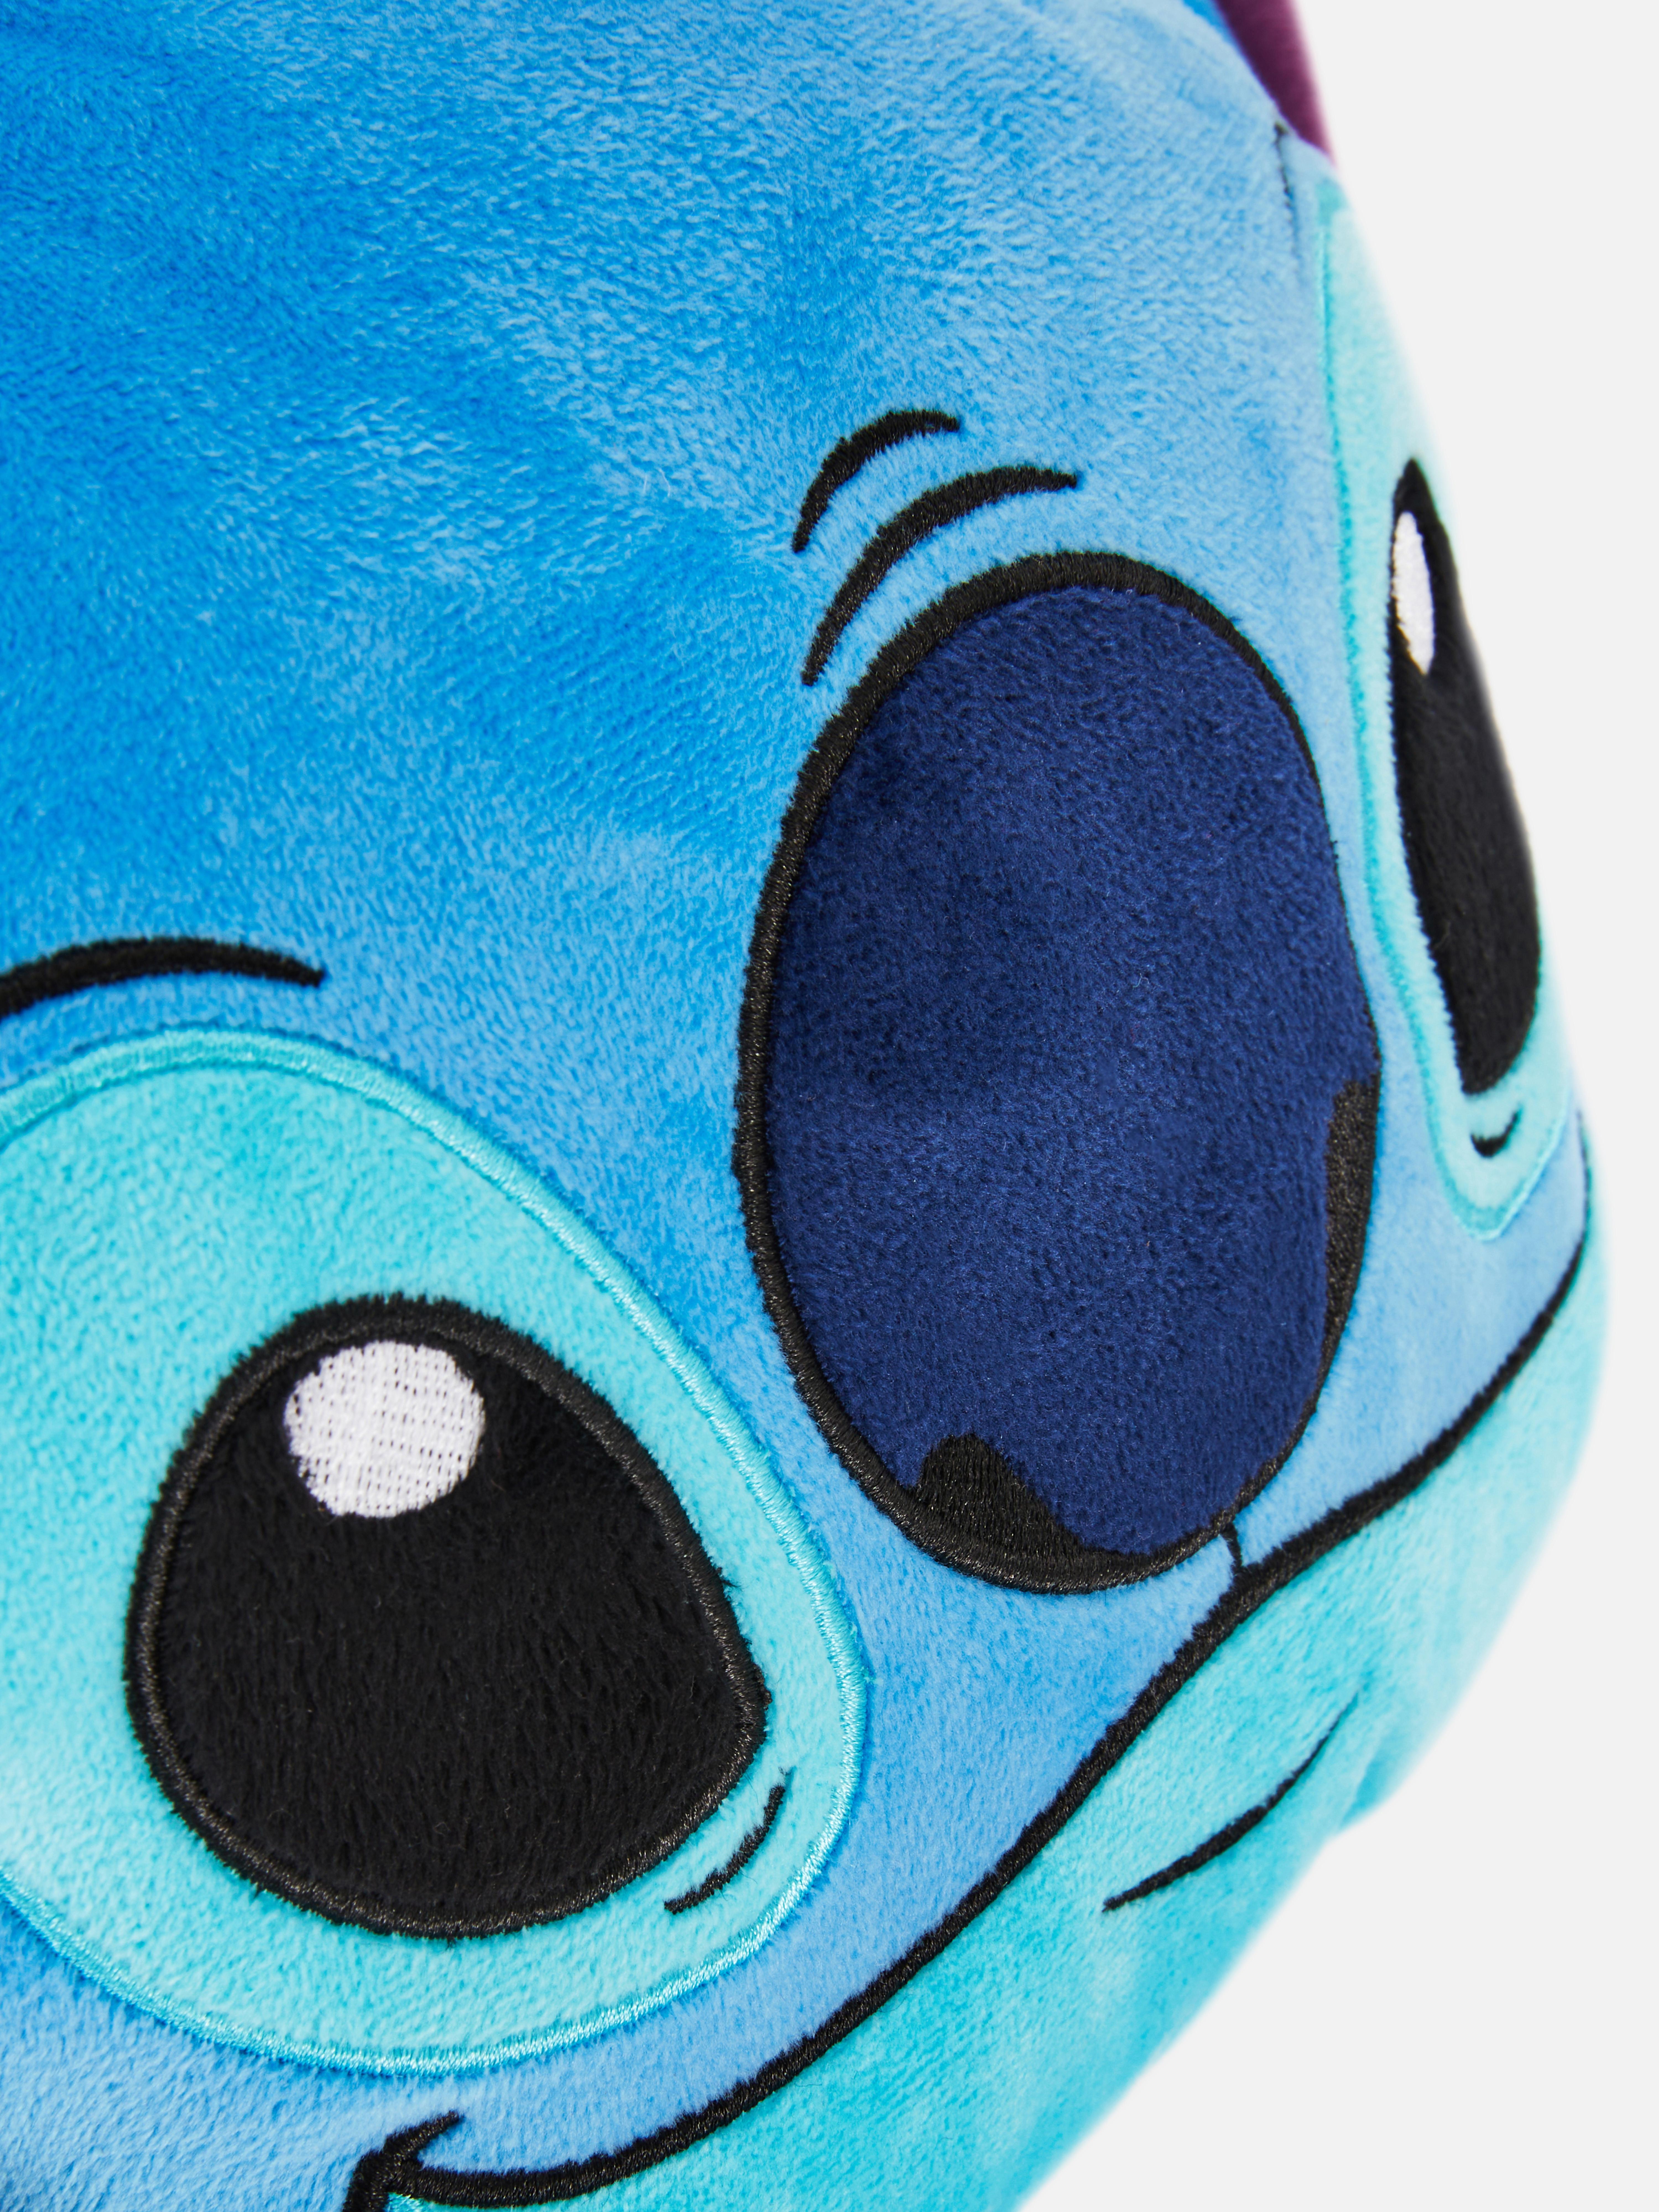 Disney's Lilo & Stitch Car Pillow